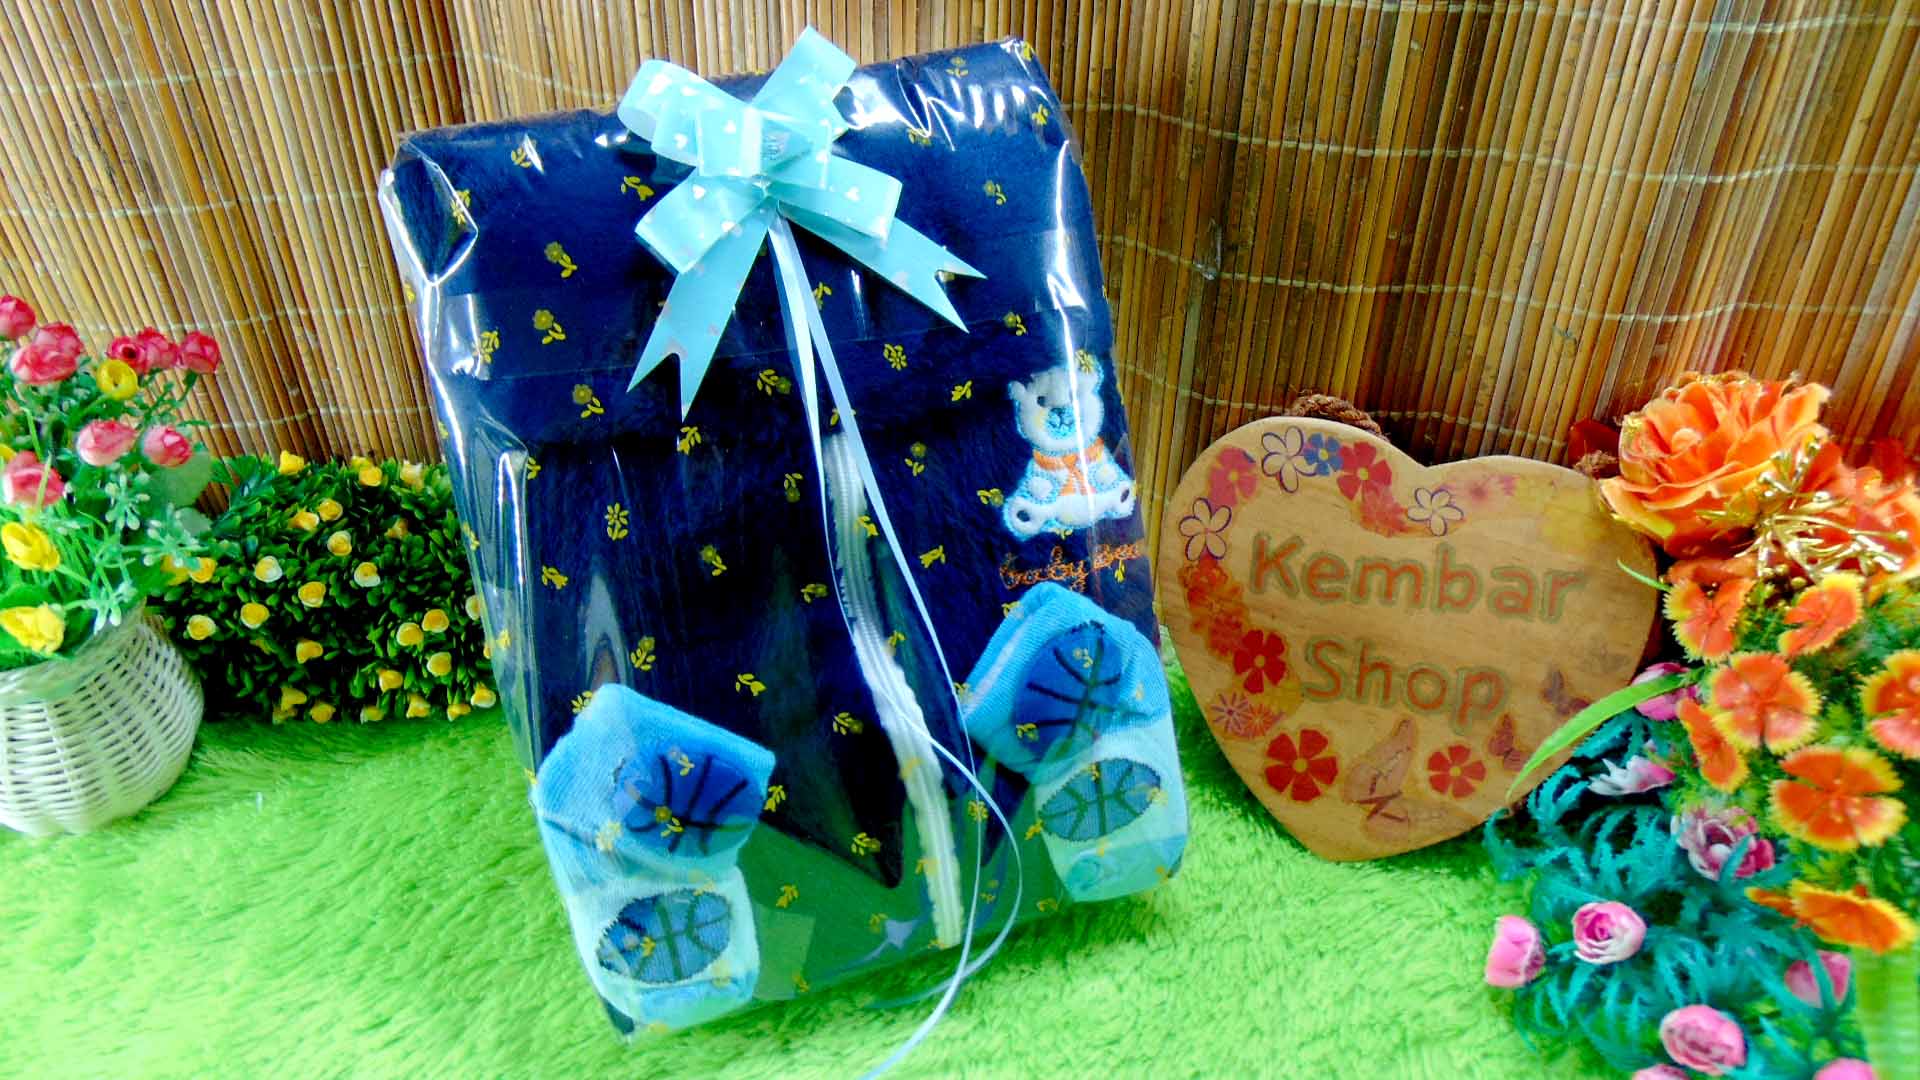 2 FREE KARTU UCAPAN paket kado lahiran bayi baby gift set box jaket plus sock ANEKA motif